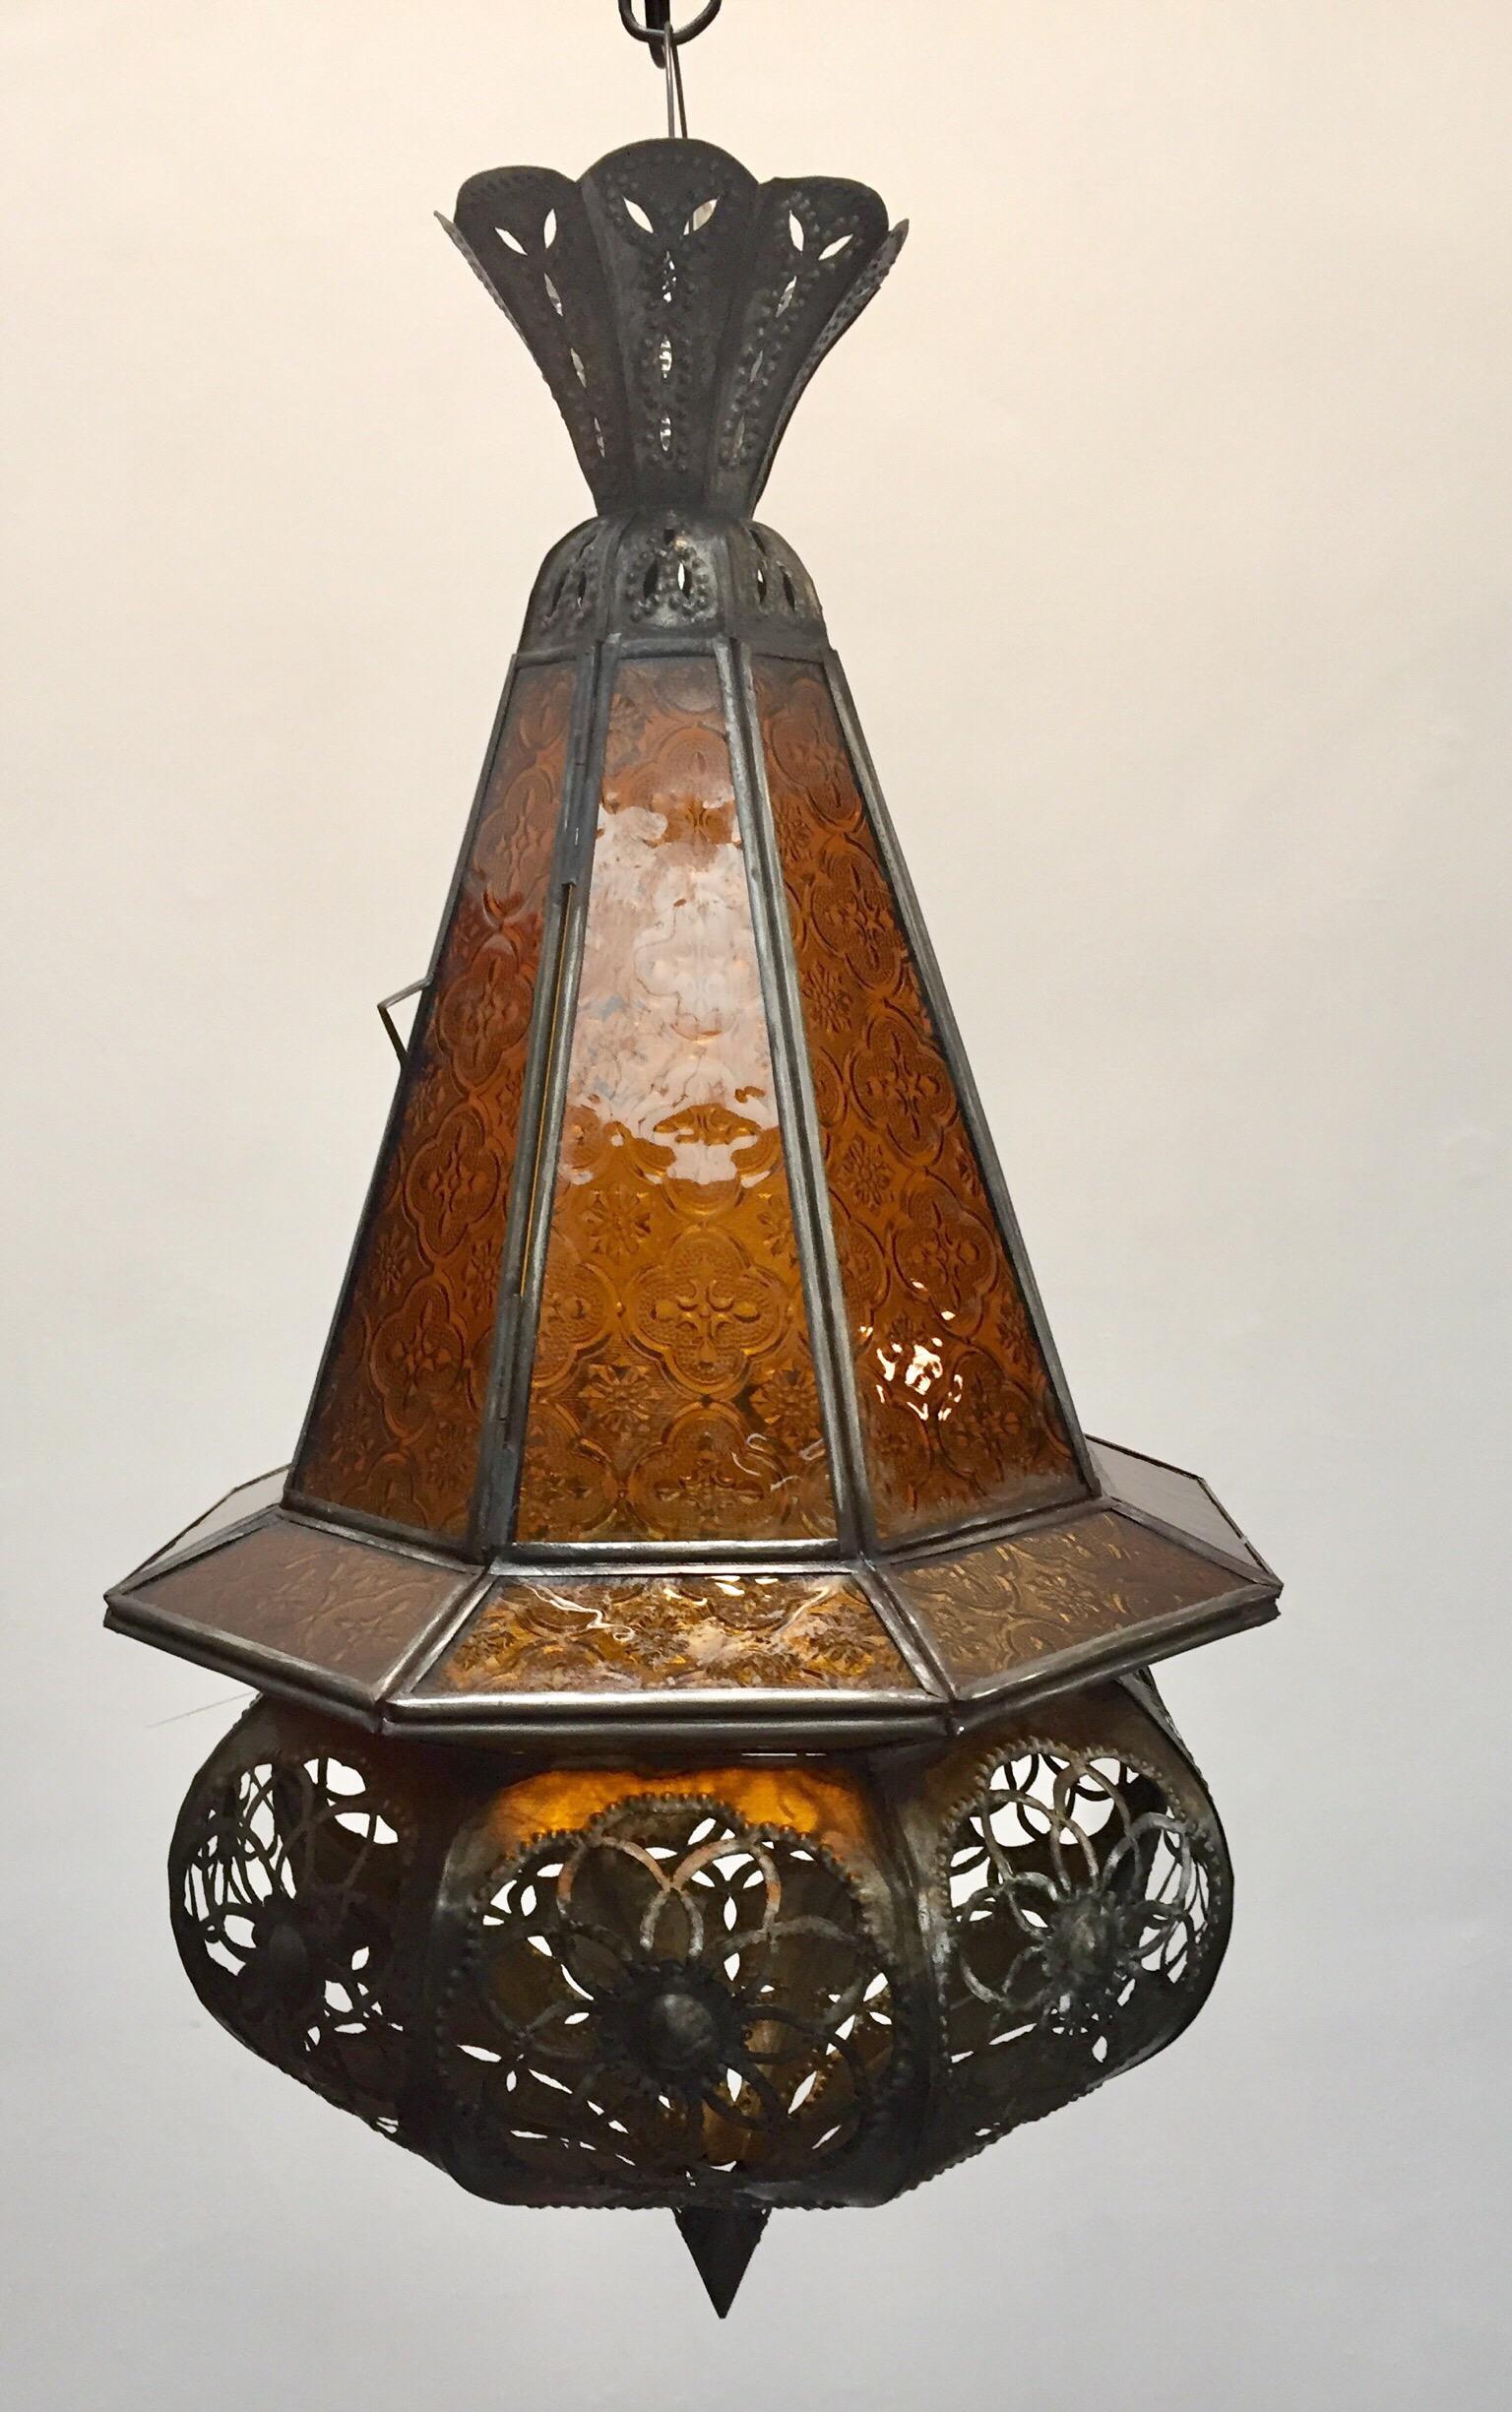 Élégante lanterne marocaine fabriquée à la main avec du verre moulé ambré et du métal avec une finition en bronze antique. Lanterne artisanale marocaine en verre ambré. Finement fabriqué à la main avec un travail de métal ouvert, des motifs floraux